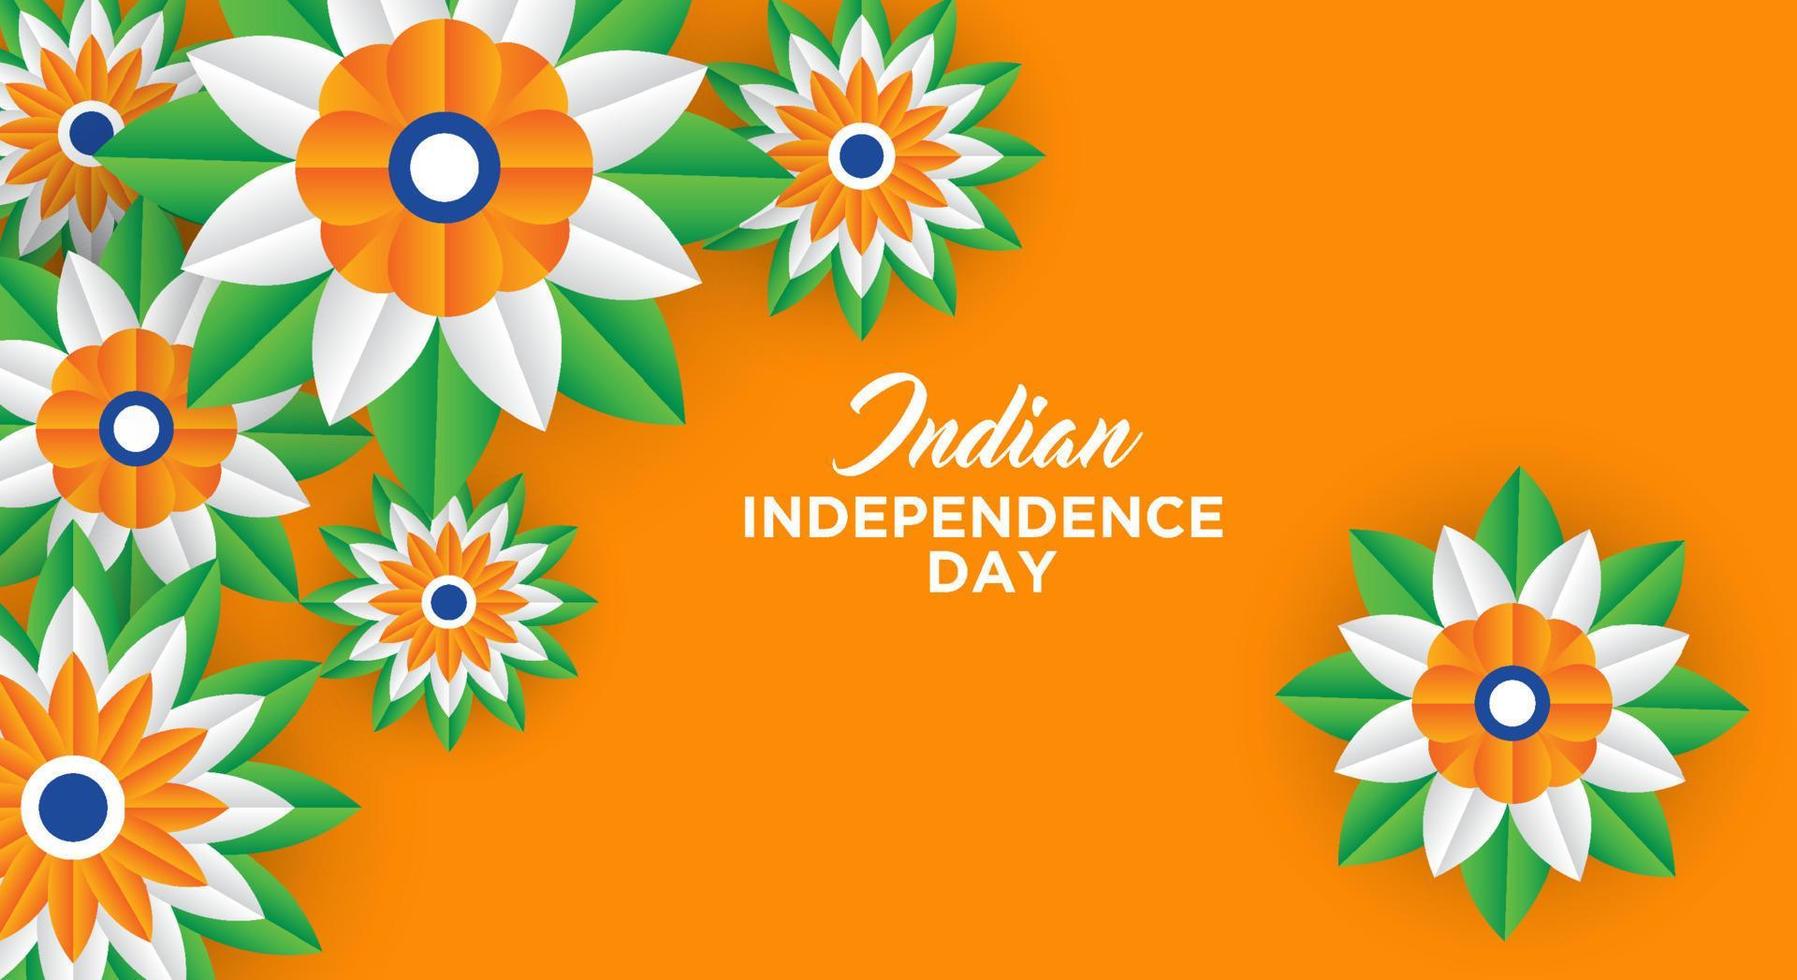 indisches unabhängigkeitstag-feiertagsdesign. 3D-Räder, Blumen mit Blättern in traditioneller Trikolore der indischen Flagge. Papierschnitt-Stil. vektor